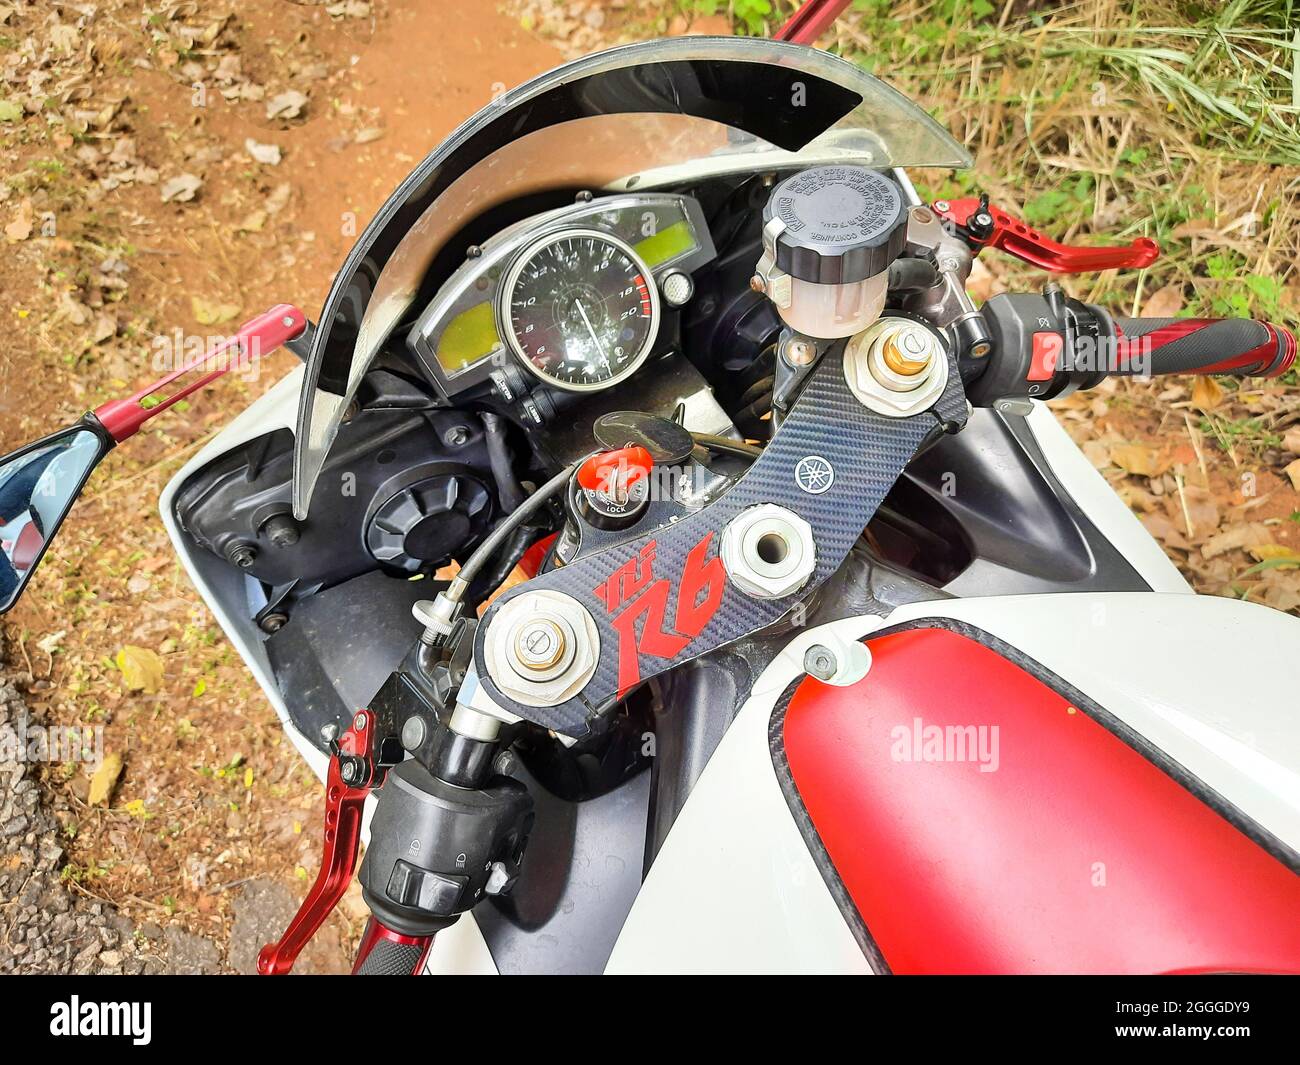 'Colombo, provincia occidentale sri lanka - 08 01 2021 : Vista laterale di una maniglia per motociclette Yamaha Racing e di un misuratore da corsa' Foto Stock